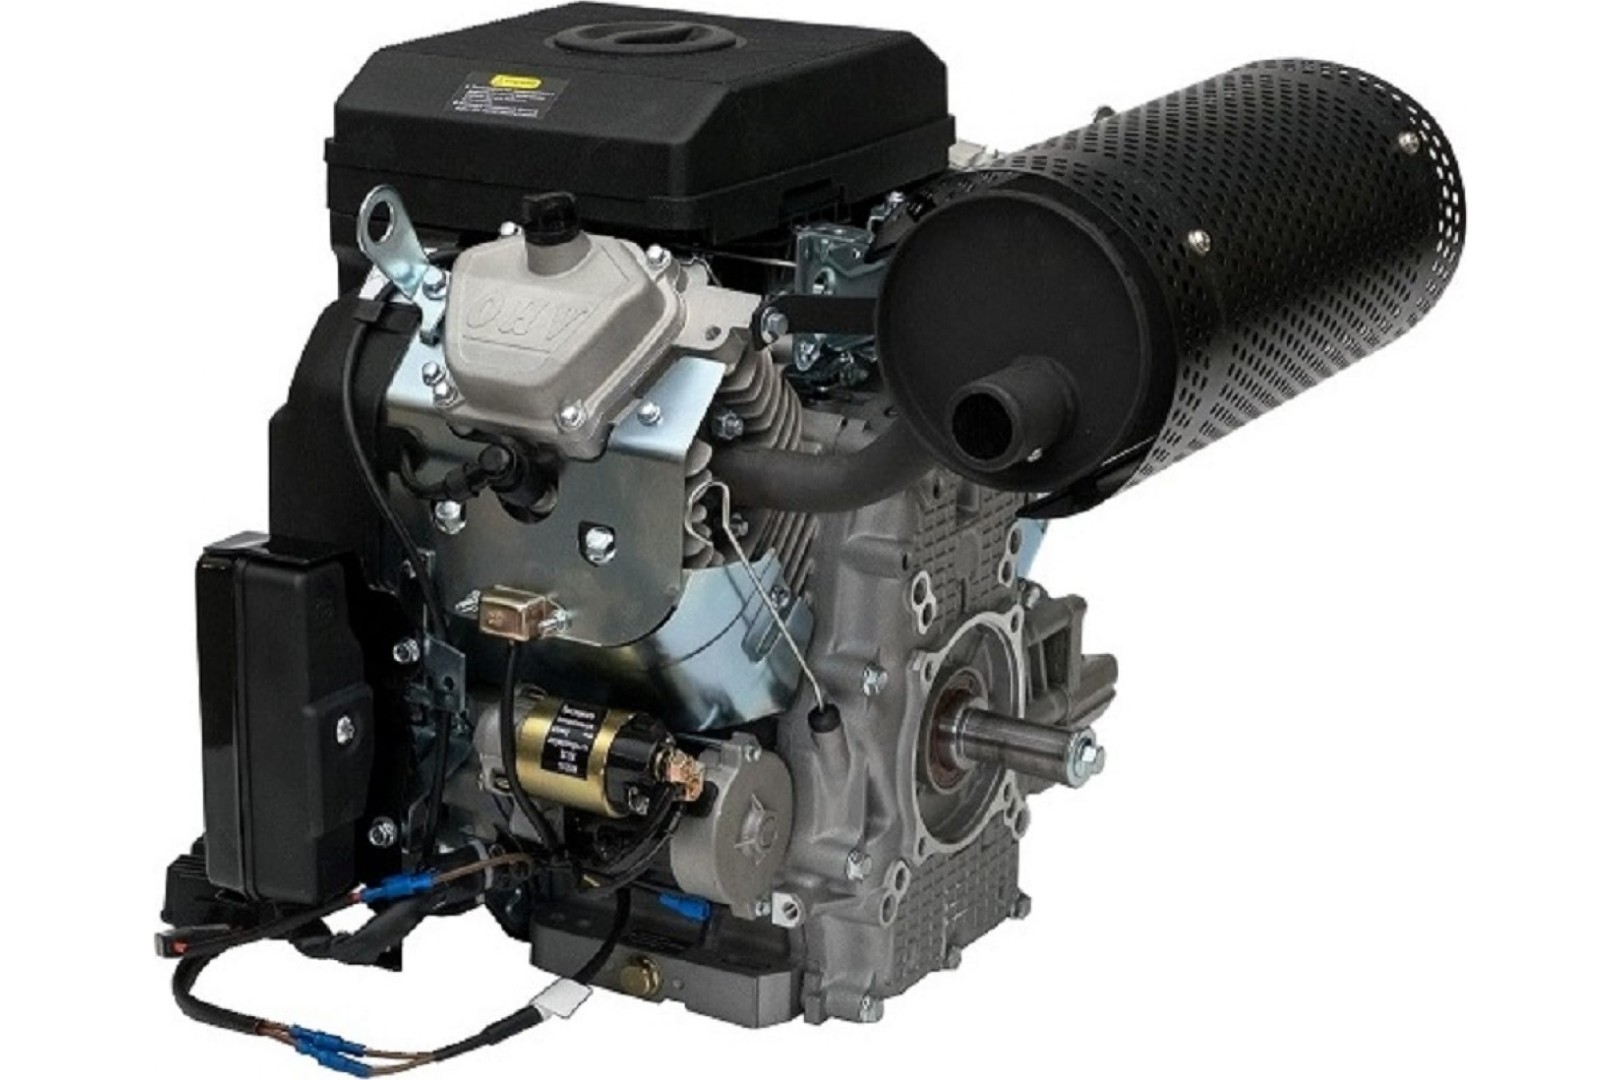 Двигатель Lifan 27л.с. LF2V78F-2A PRO(New), 27 л.с. D25 20А датчик давл./м, м/радиатор